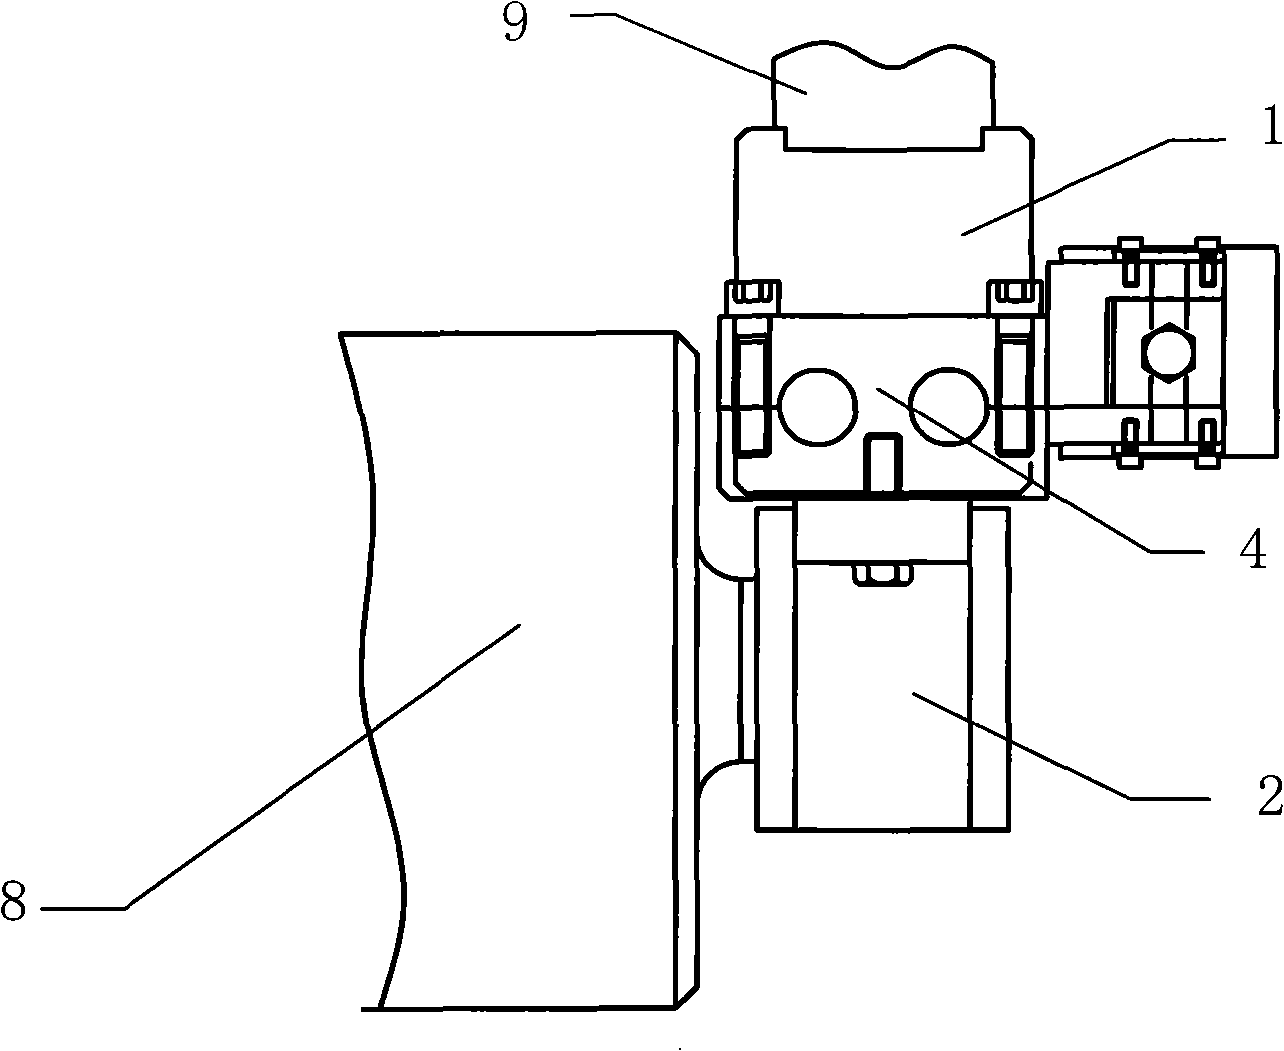 Sand belt correcting mechanism of sander